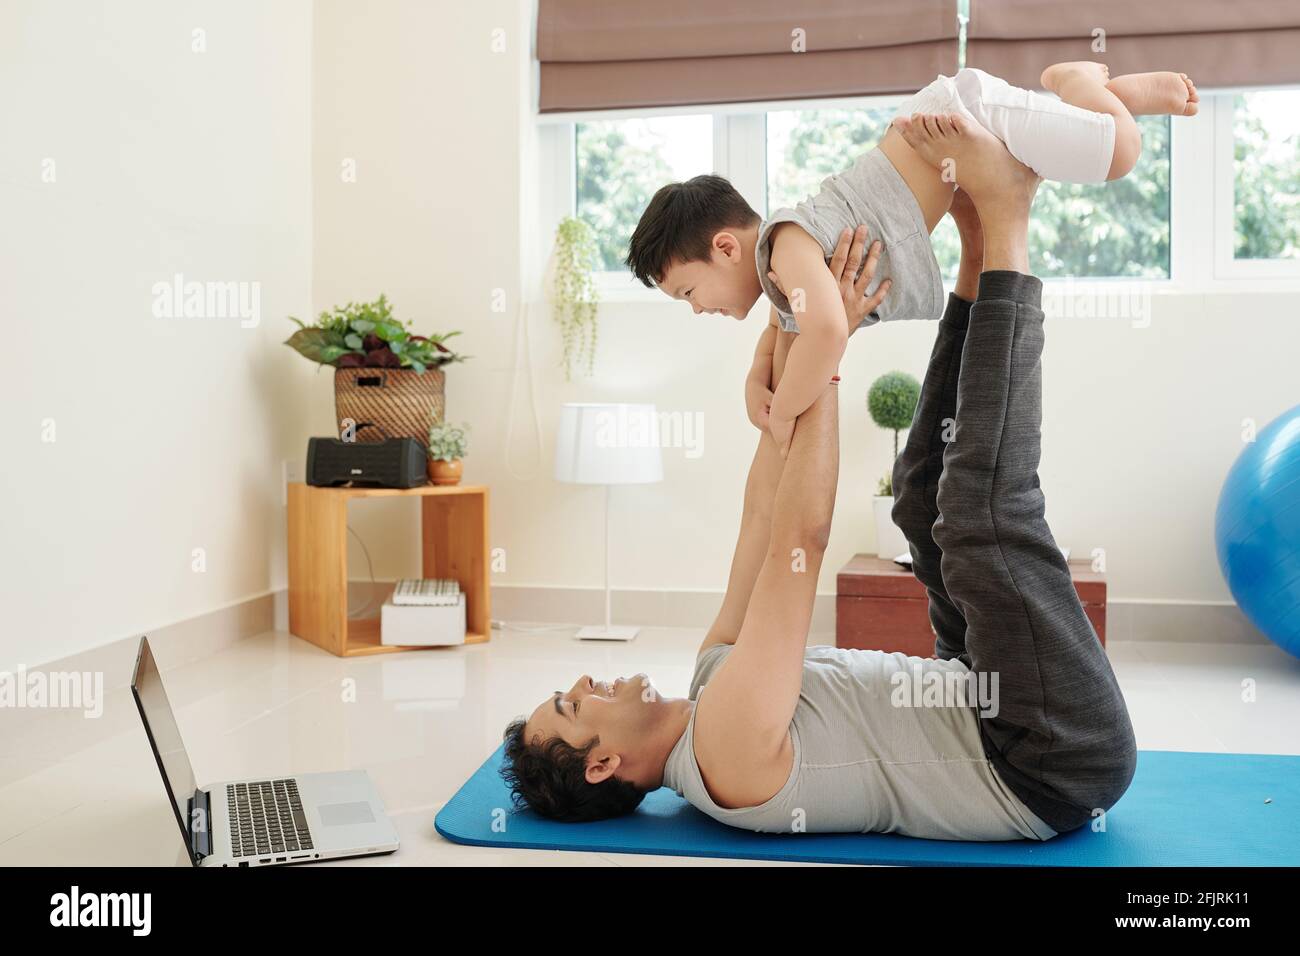 Lächelnder Inder, der auf einer Yogamatte liegt und mit ihm spielt Sein lachender kleiner Sohn Stockfoto